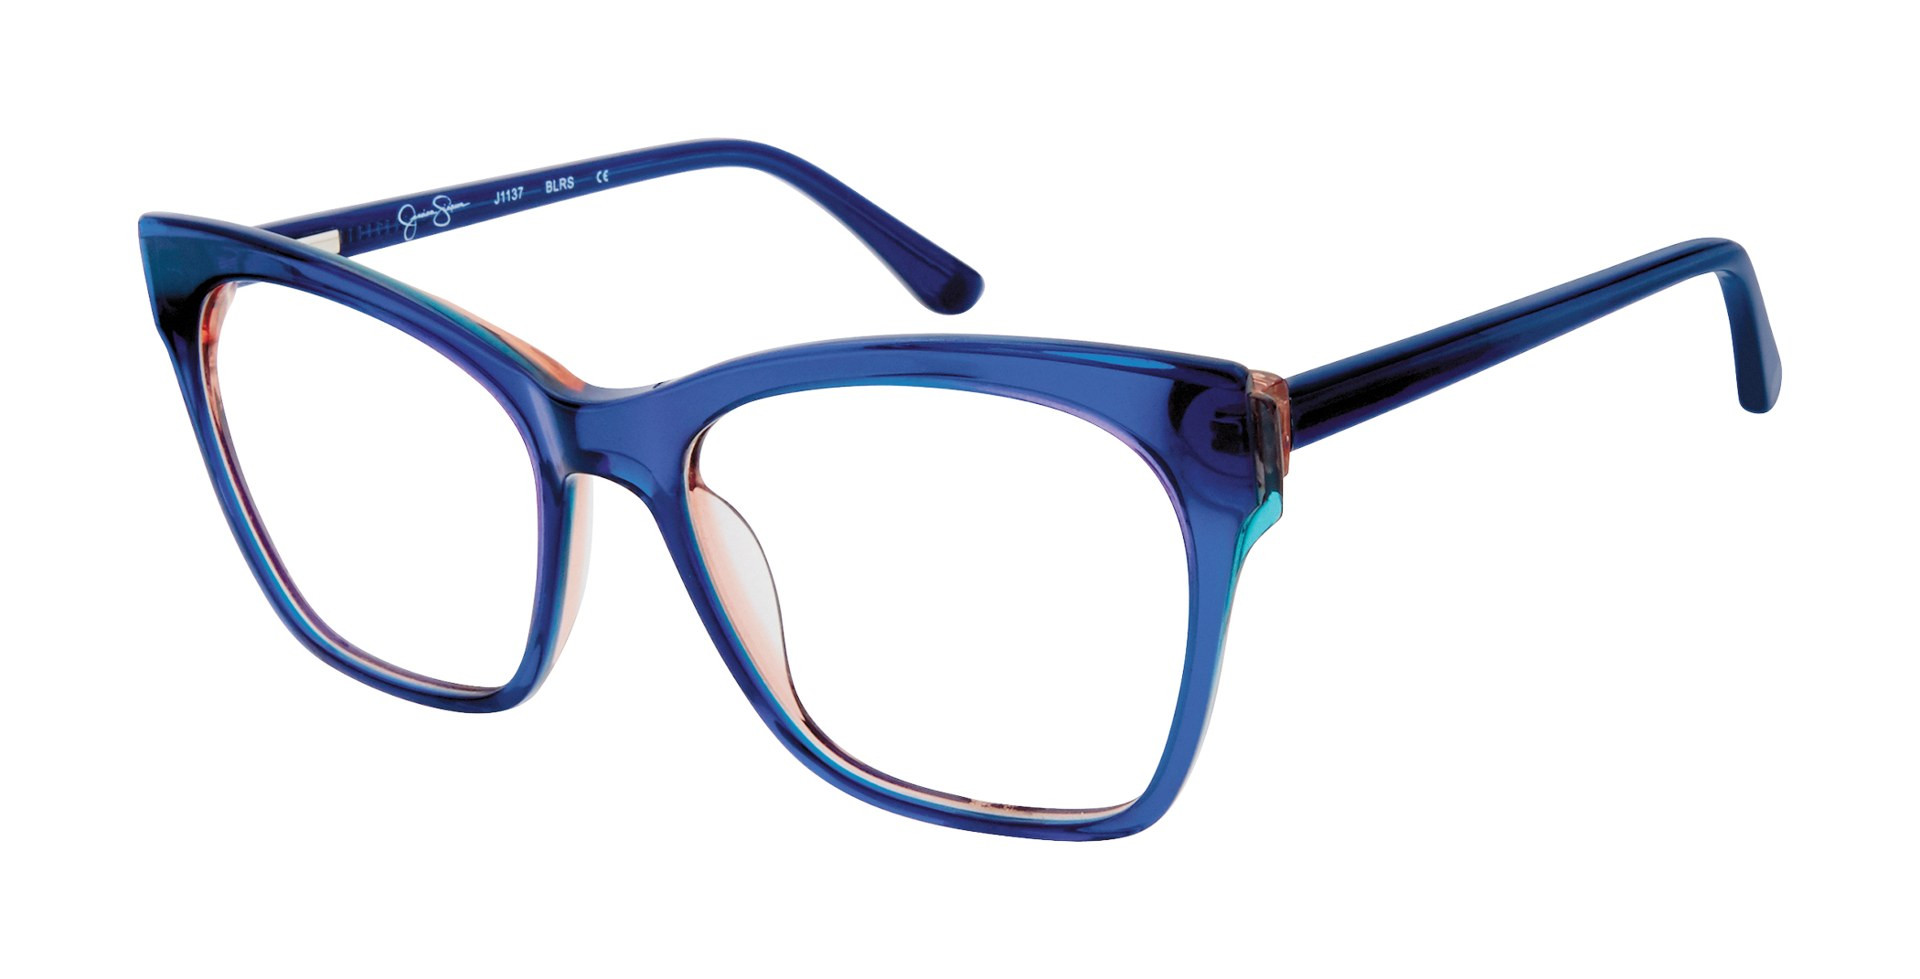 Jessica Simpson Eyeglasses J1137